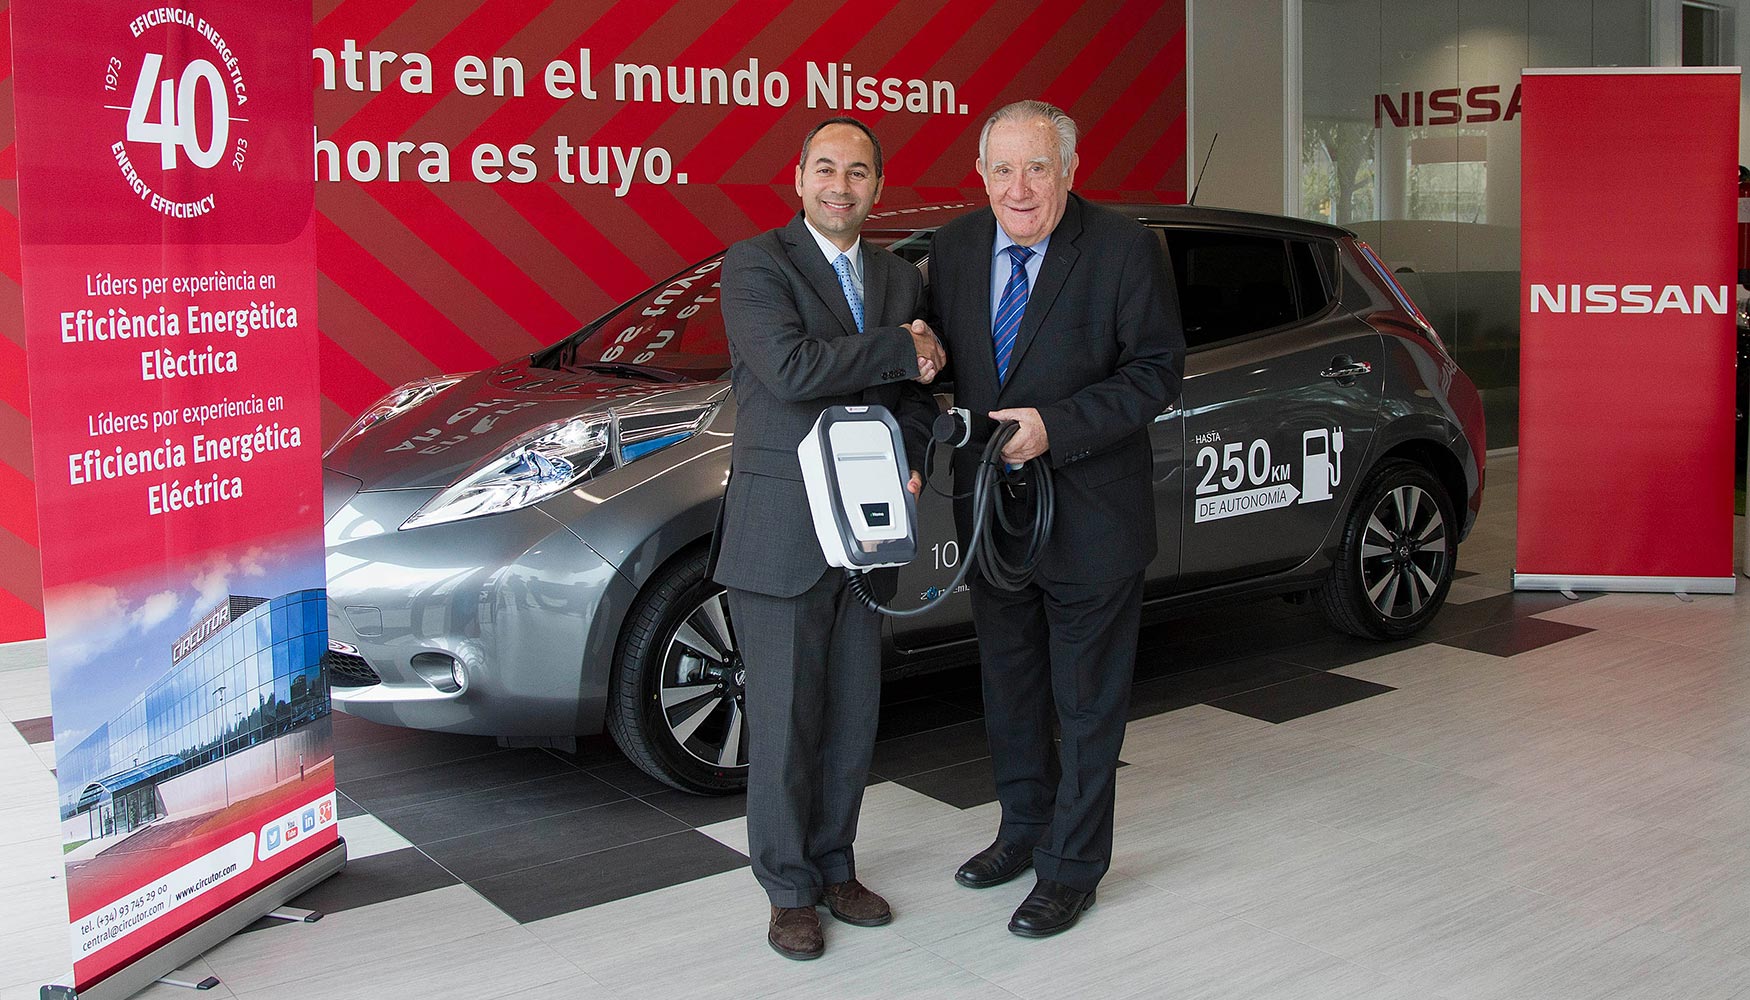 Acuerdo de Nissan y Circutor